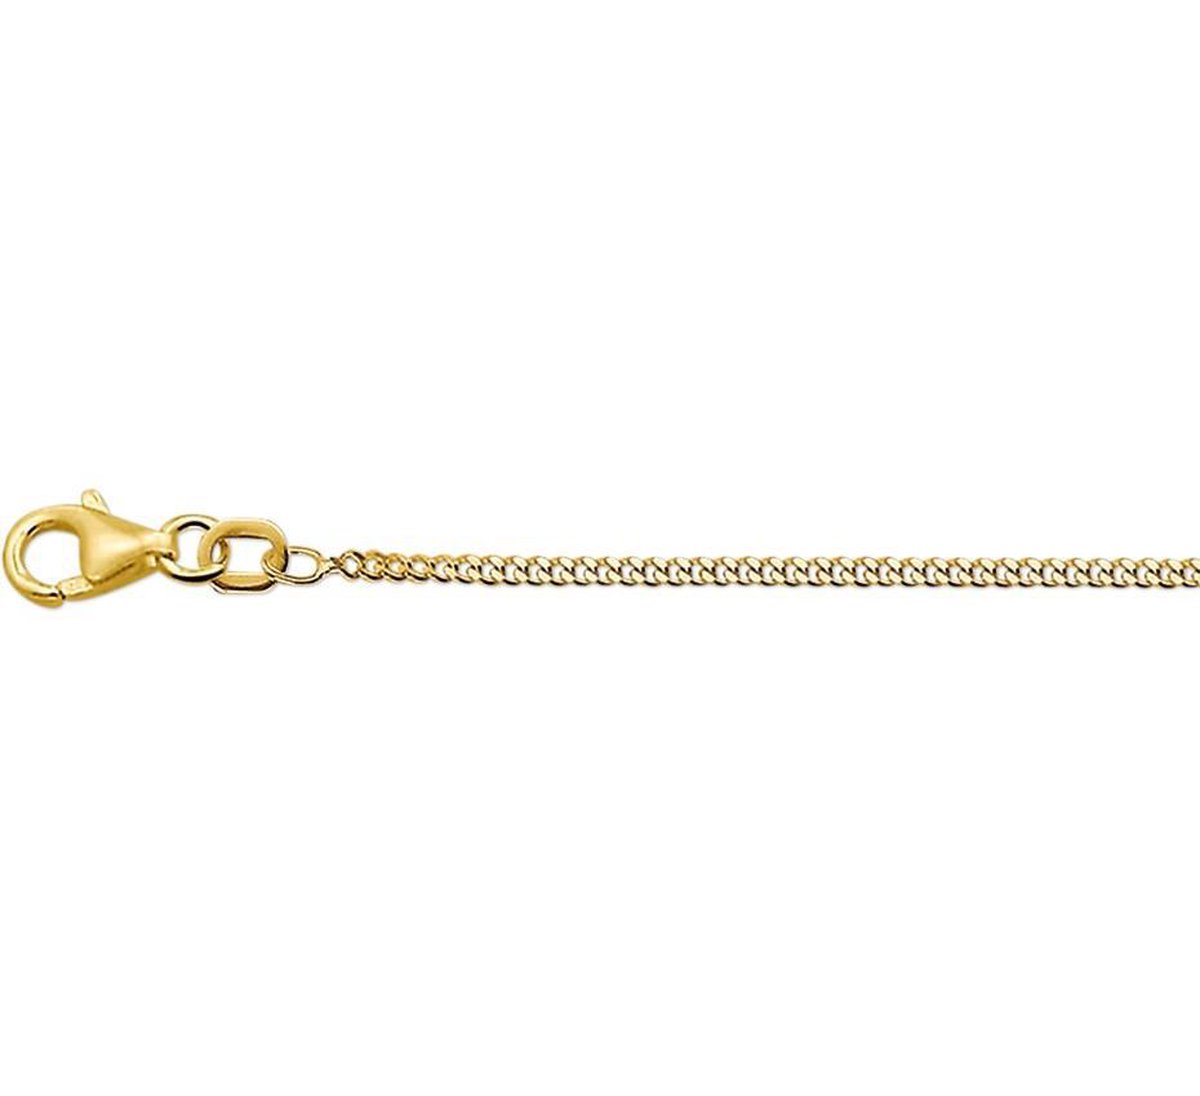 N-joy trendstyle 14k gouden gourmet collier 4334 lente 50 cm, afterpay, snel geleverd, gratis cadeauservice, eigen service atelier en graveerdienst.